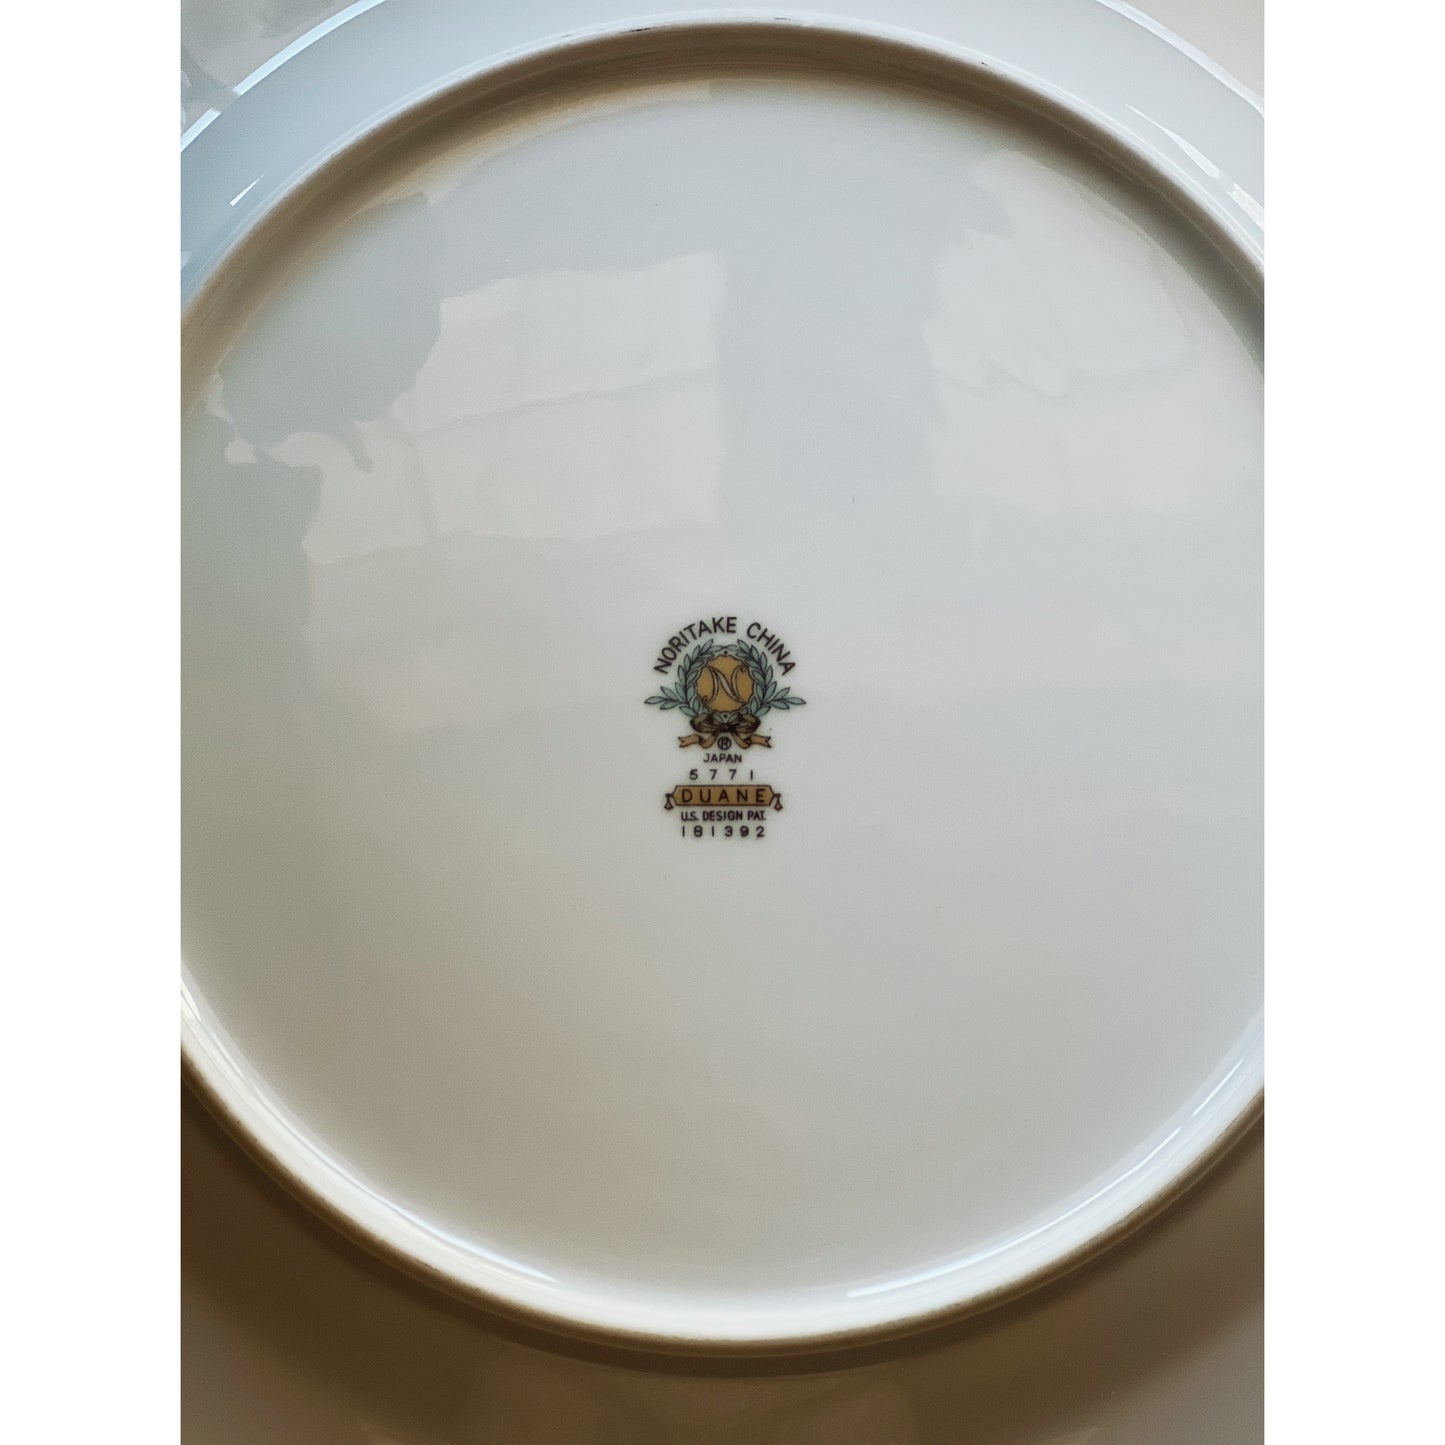 Vintage Noritake Duane Dinner Plate